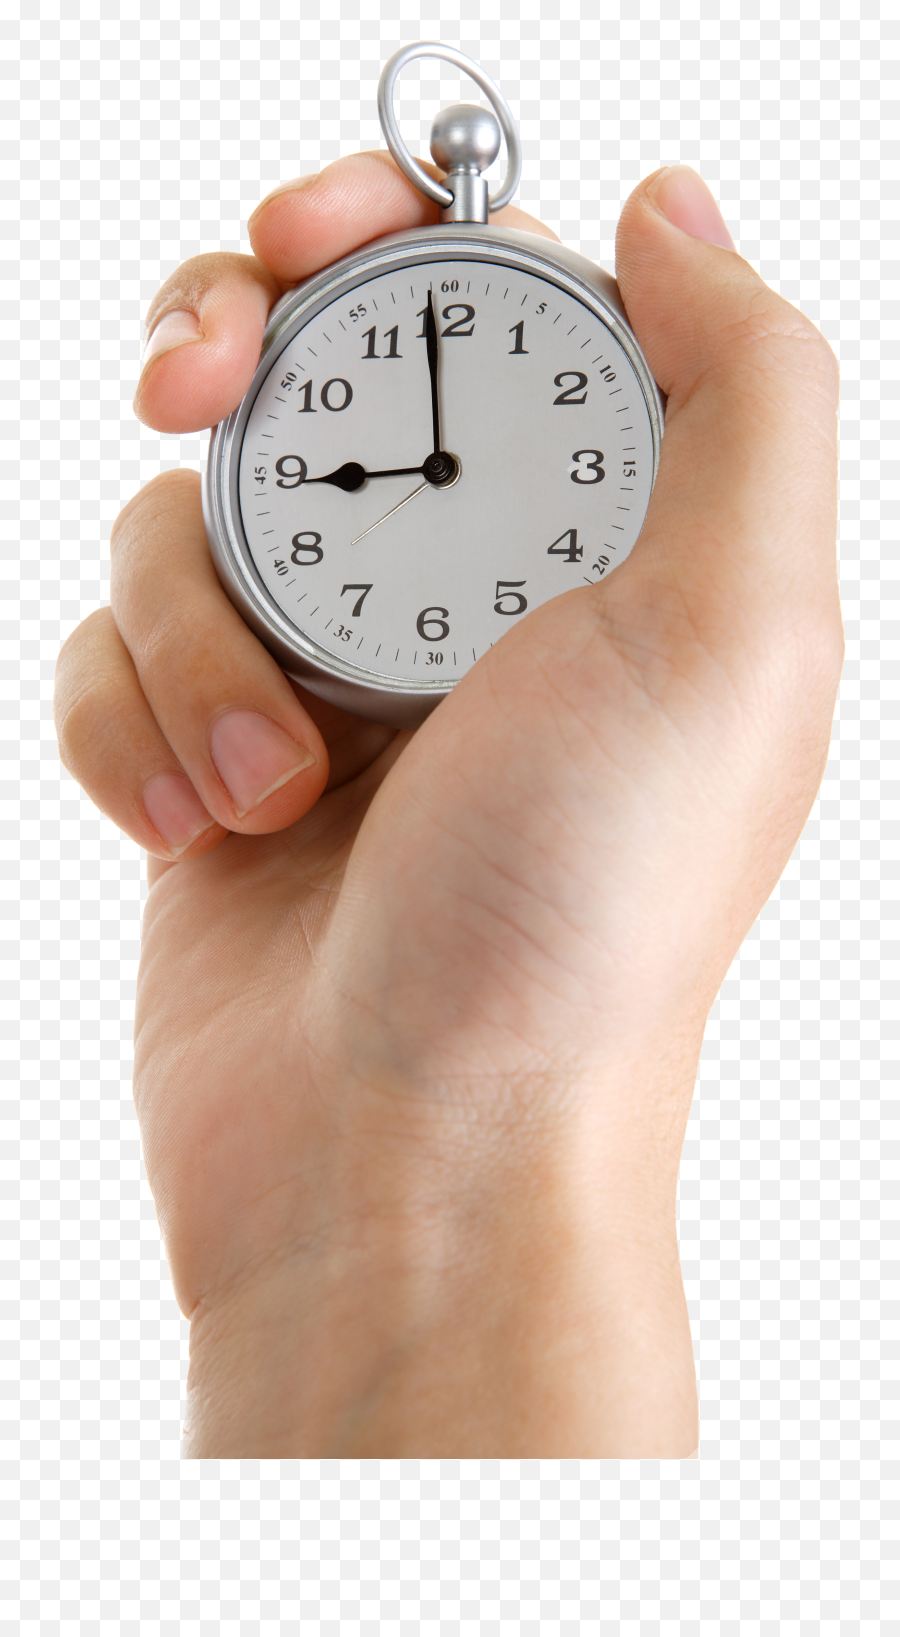 Рука держащая часы. Секундомер в руке. Часы секундомер. Часы на руке. Человек с часами.